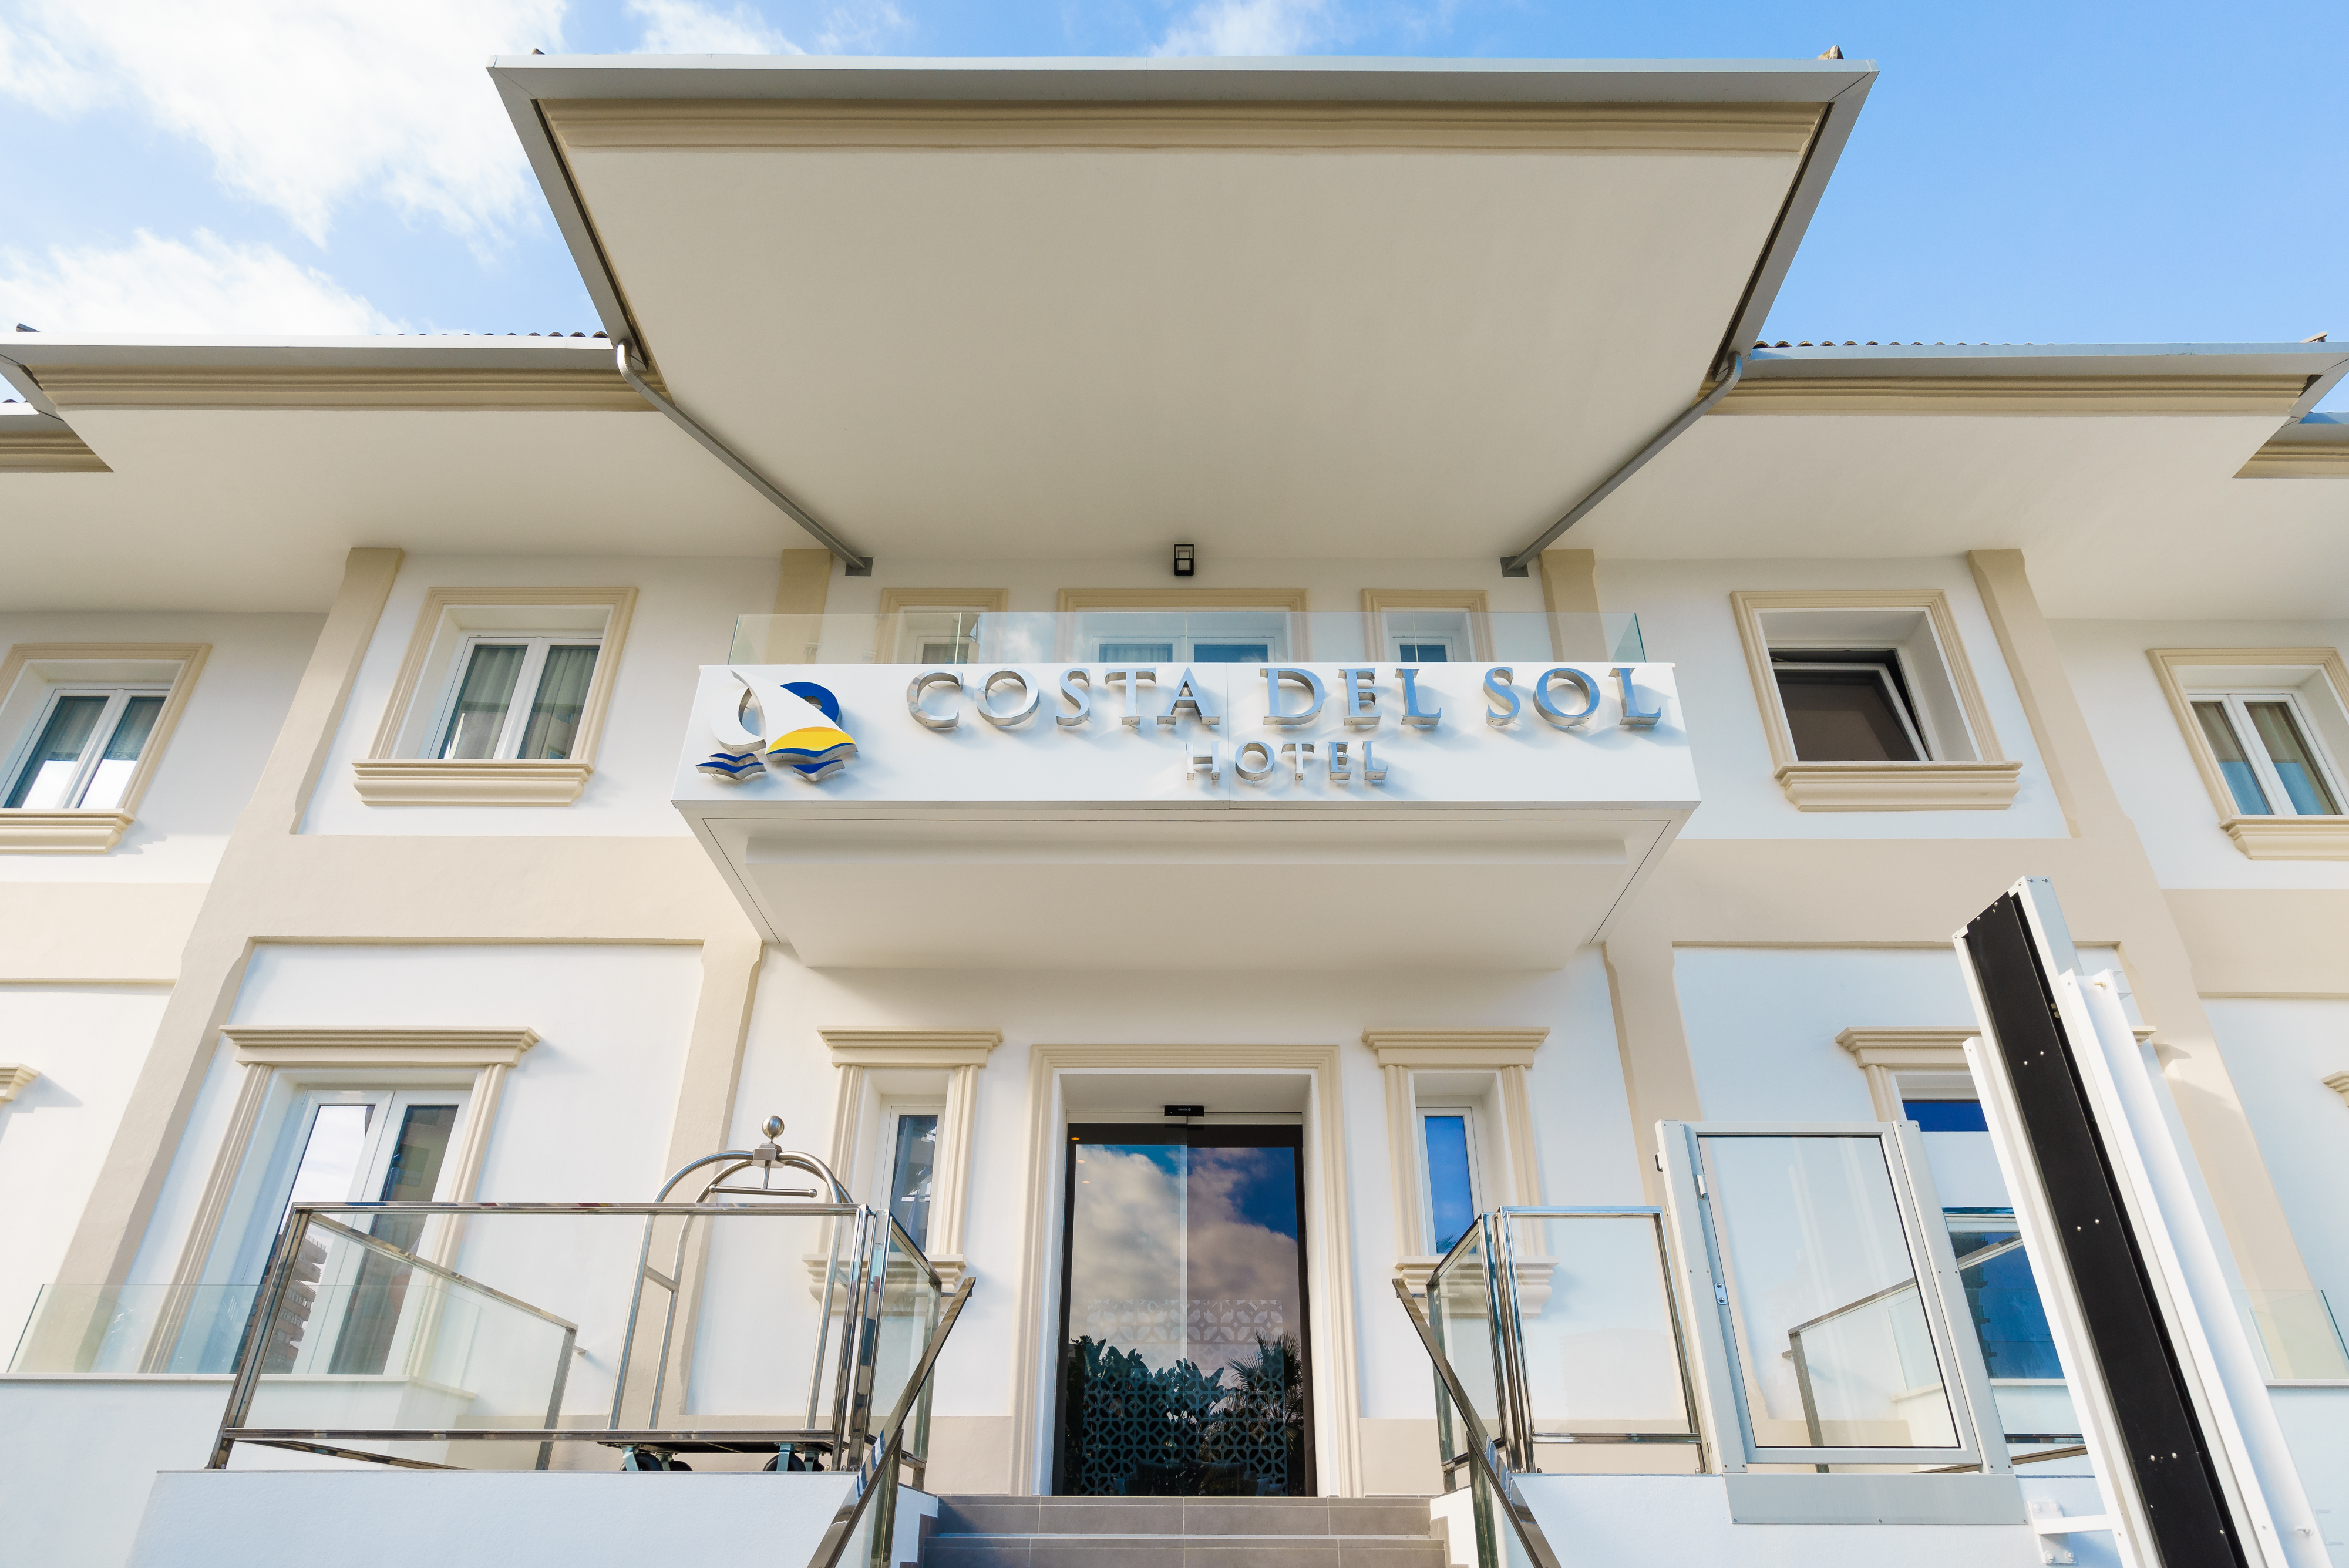 Costa del Sol Hotel